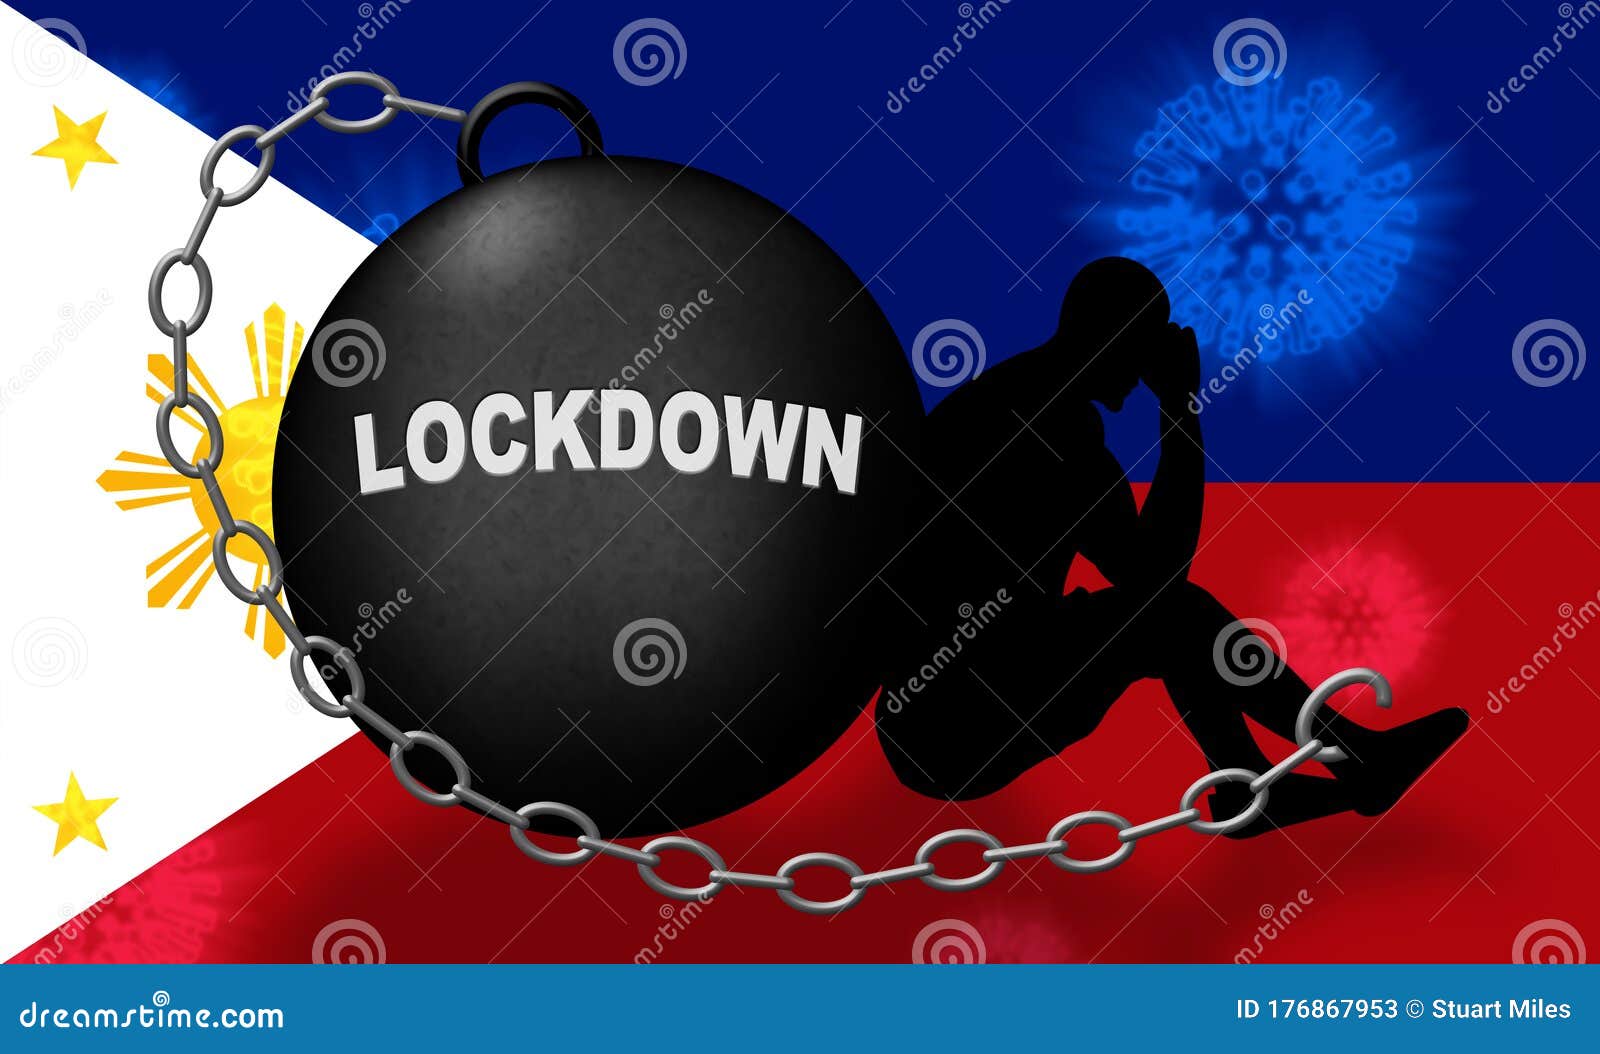 philippines lockdown or shutdown preventing coronavirus epidemic outbreak - 3d 